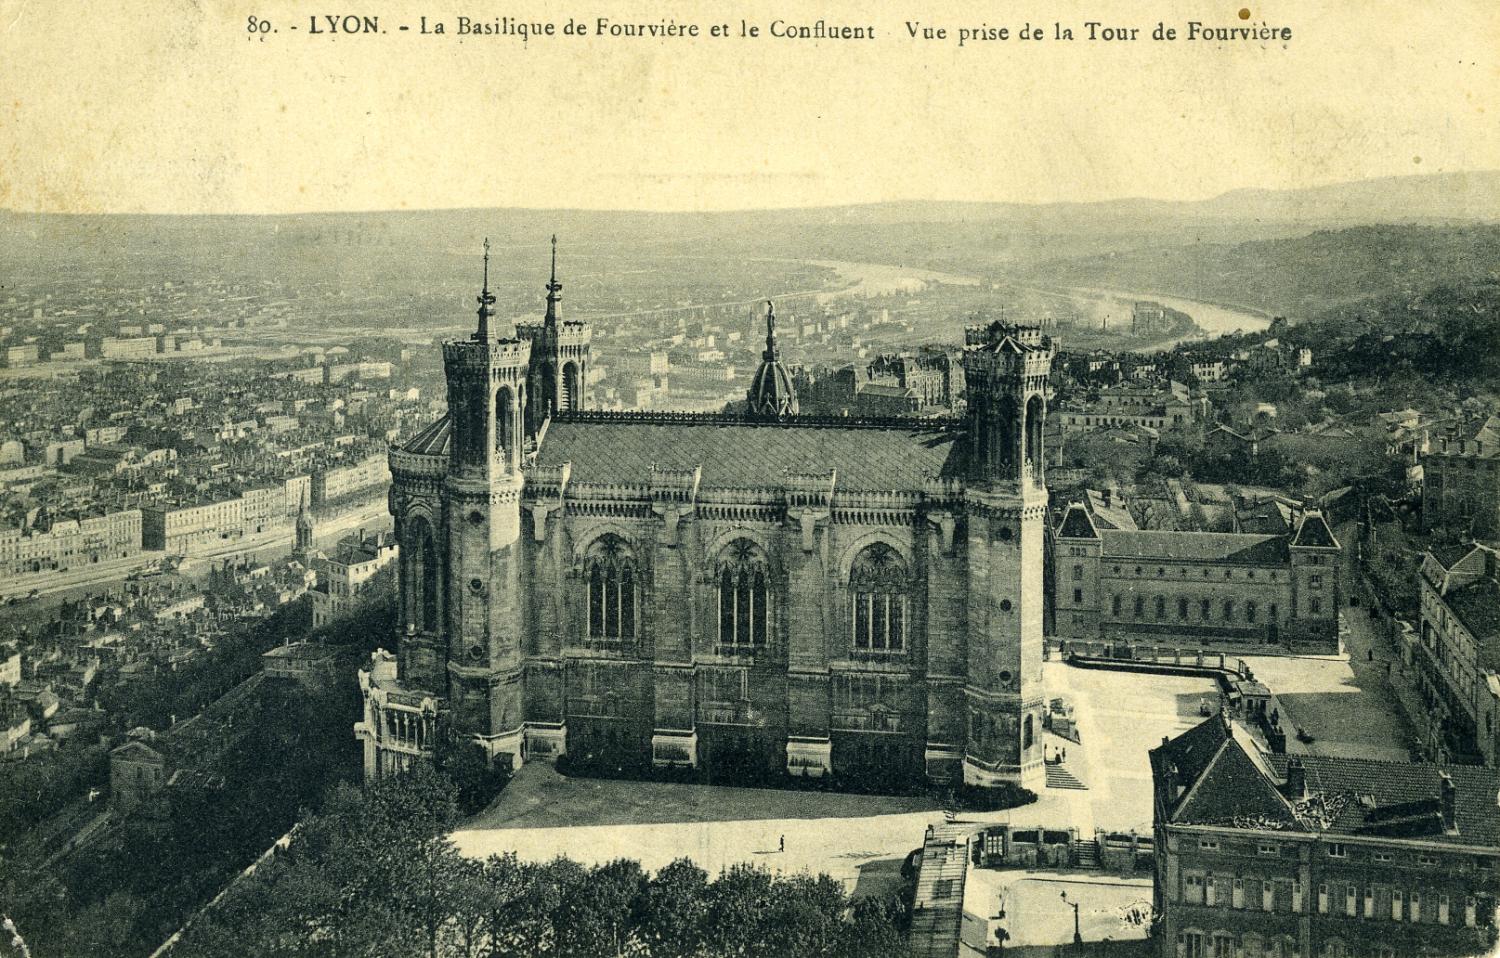 Lyon. - La Basilique de Fourvière et le Confluent